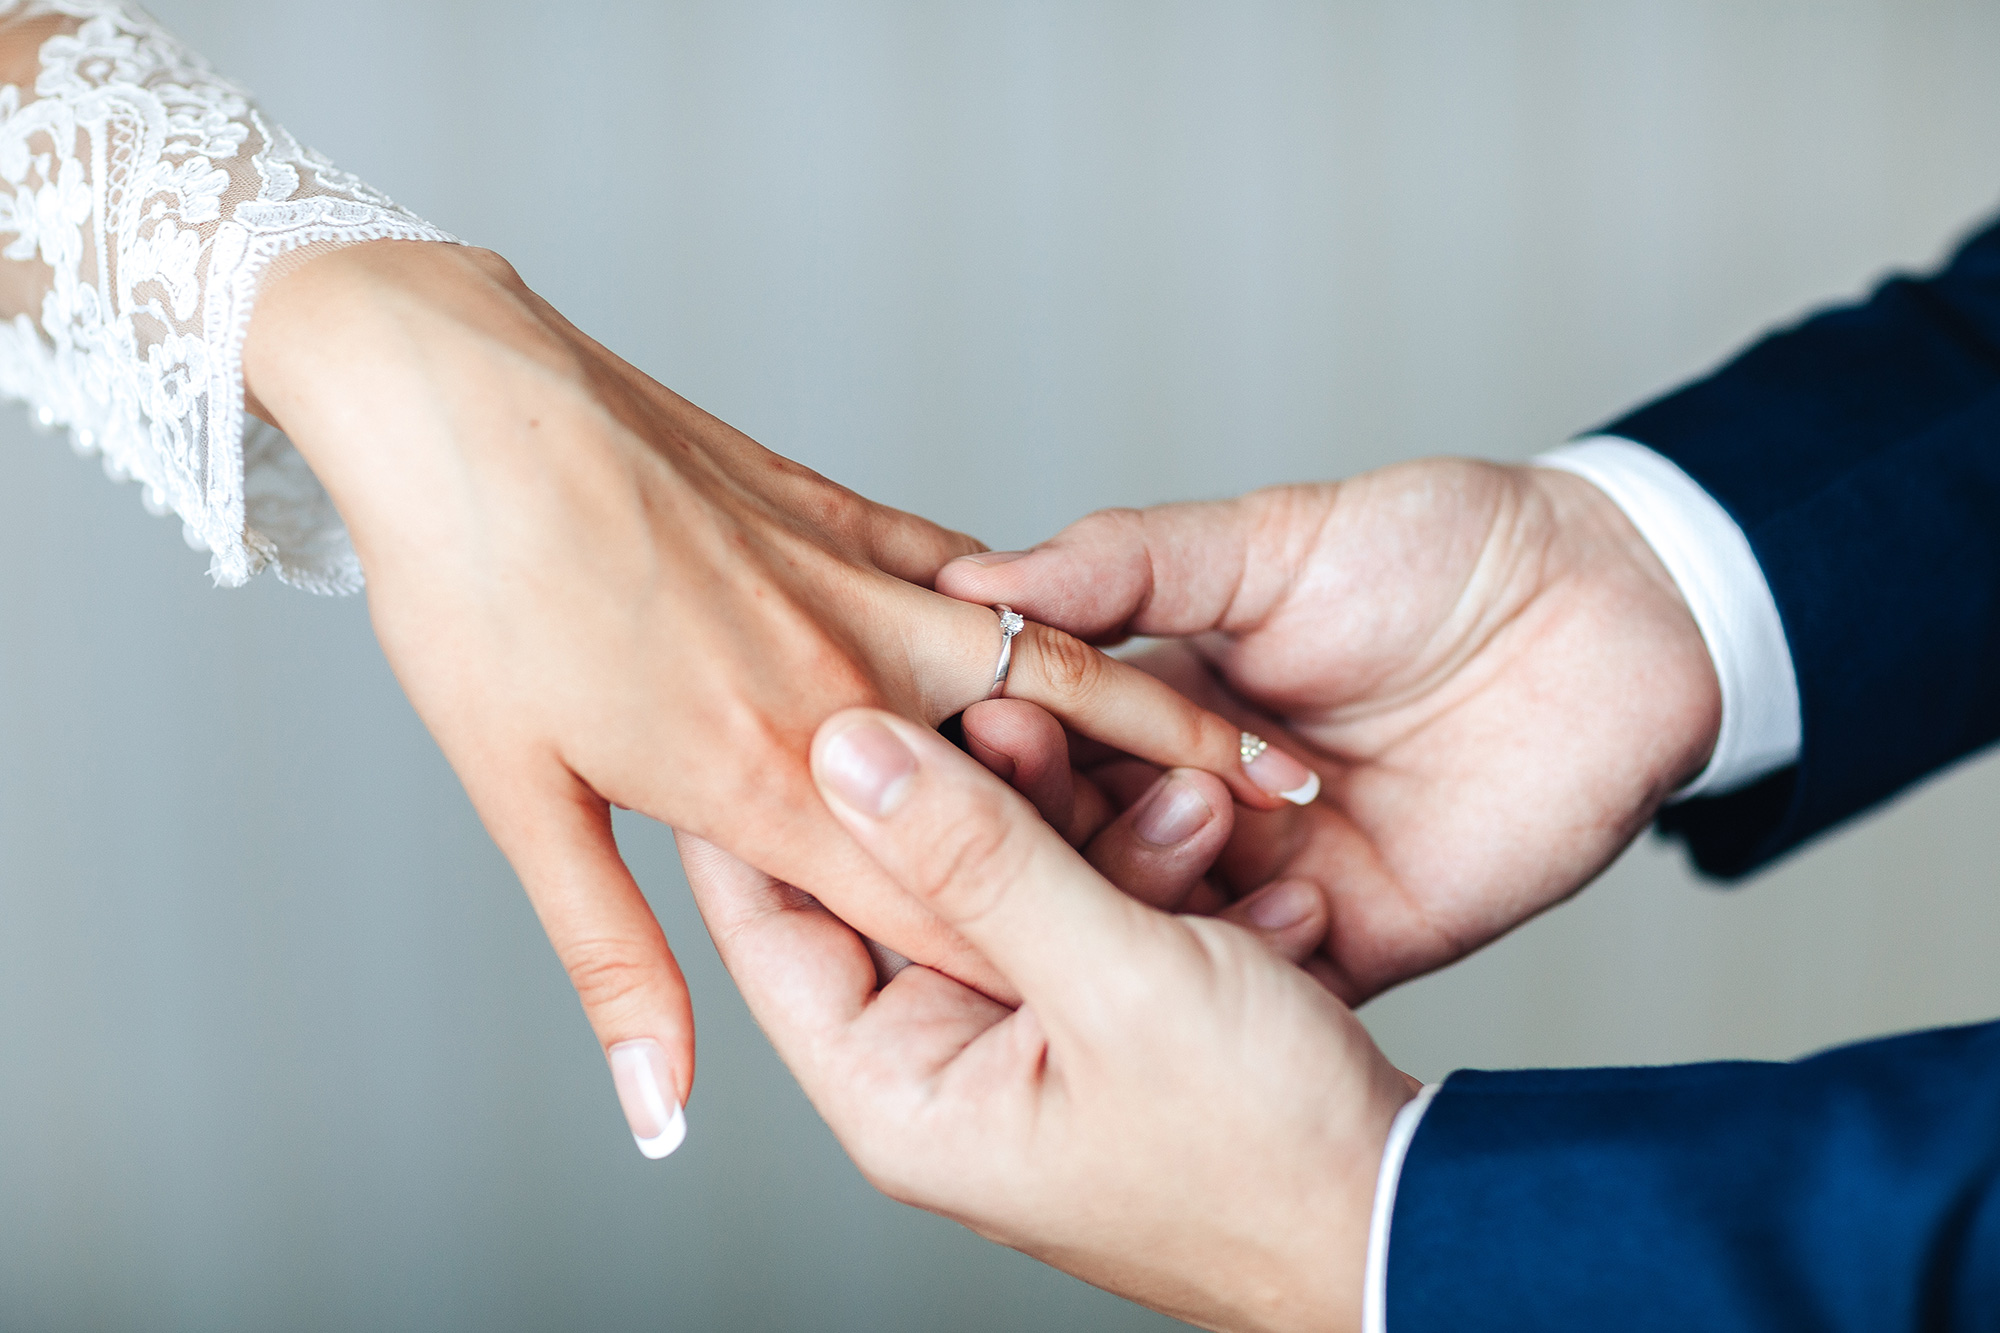 Vista desde arriba de un par de manos poniendo un anillo de bodas en la mano de otra persona